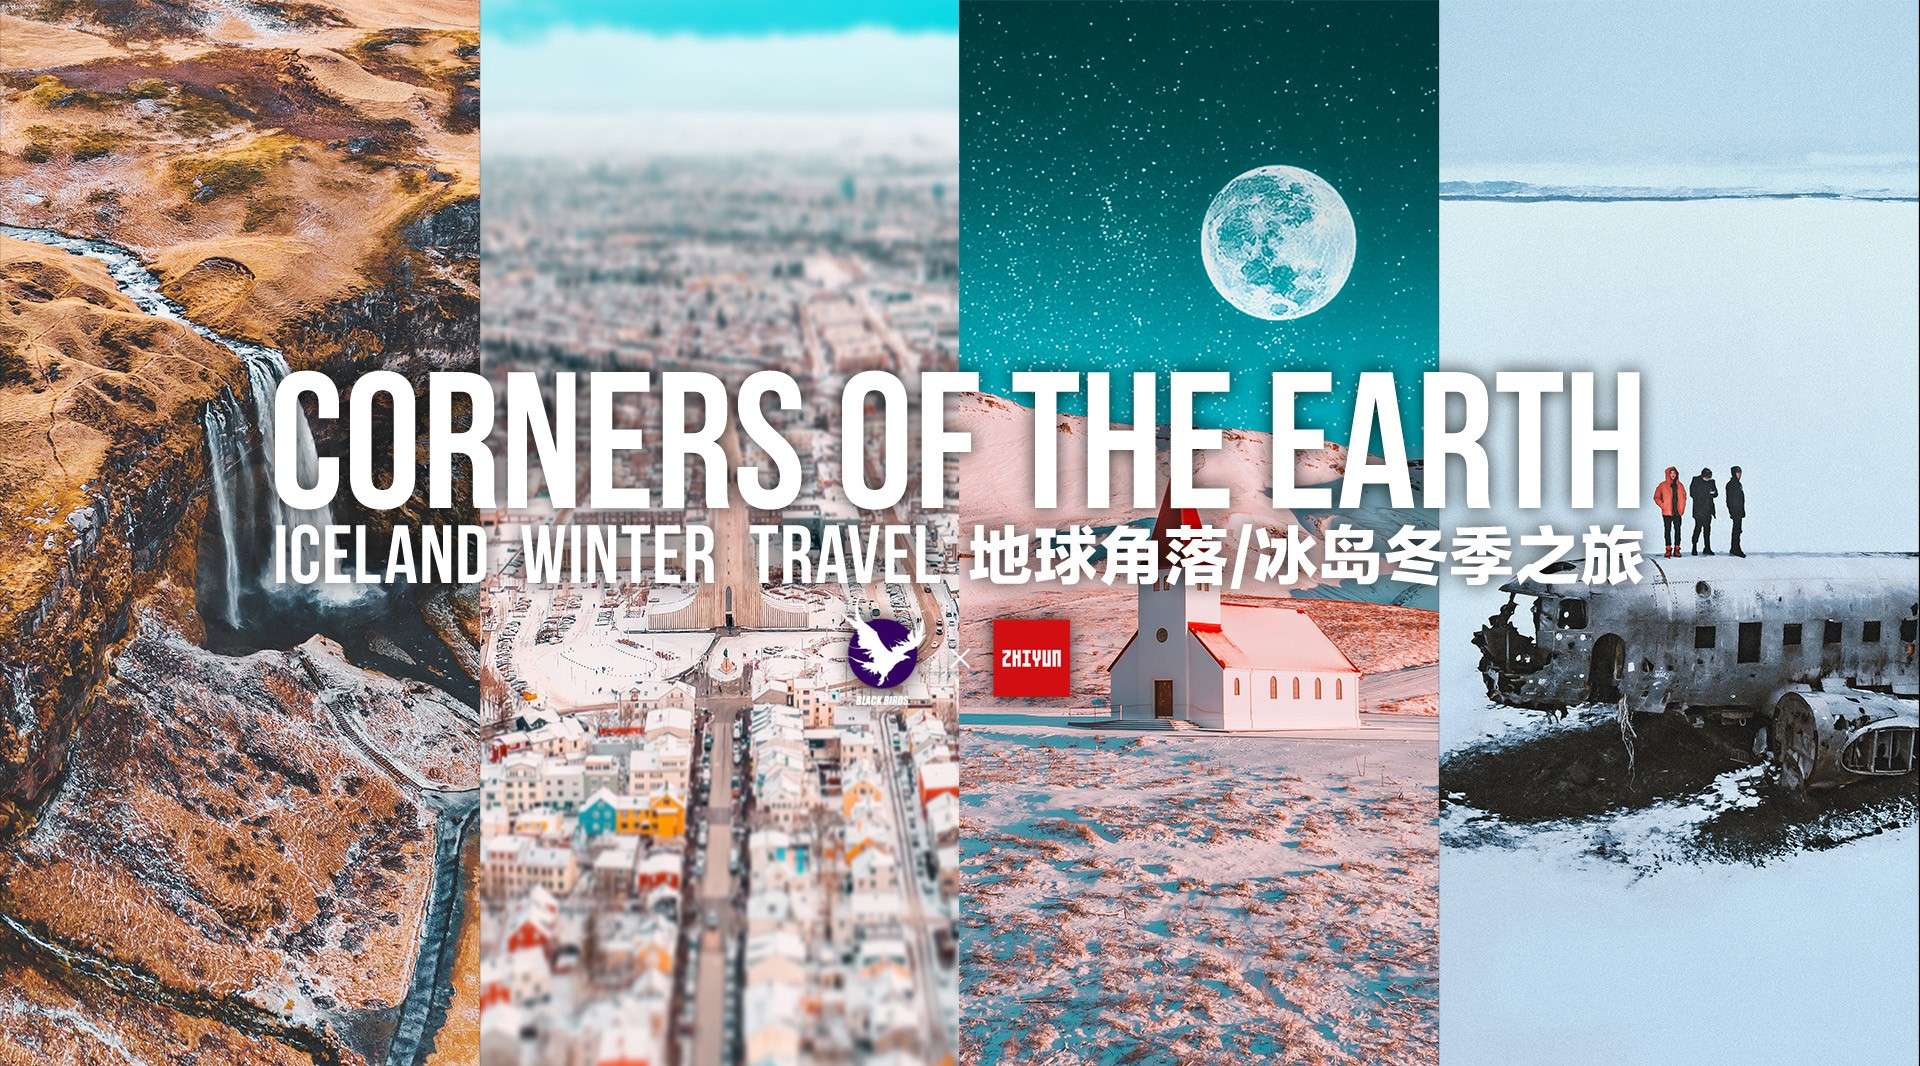 地球角落-冰岛冬季之旅 /Corners of the earth